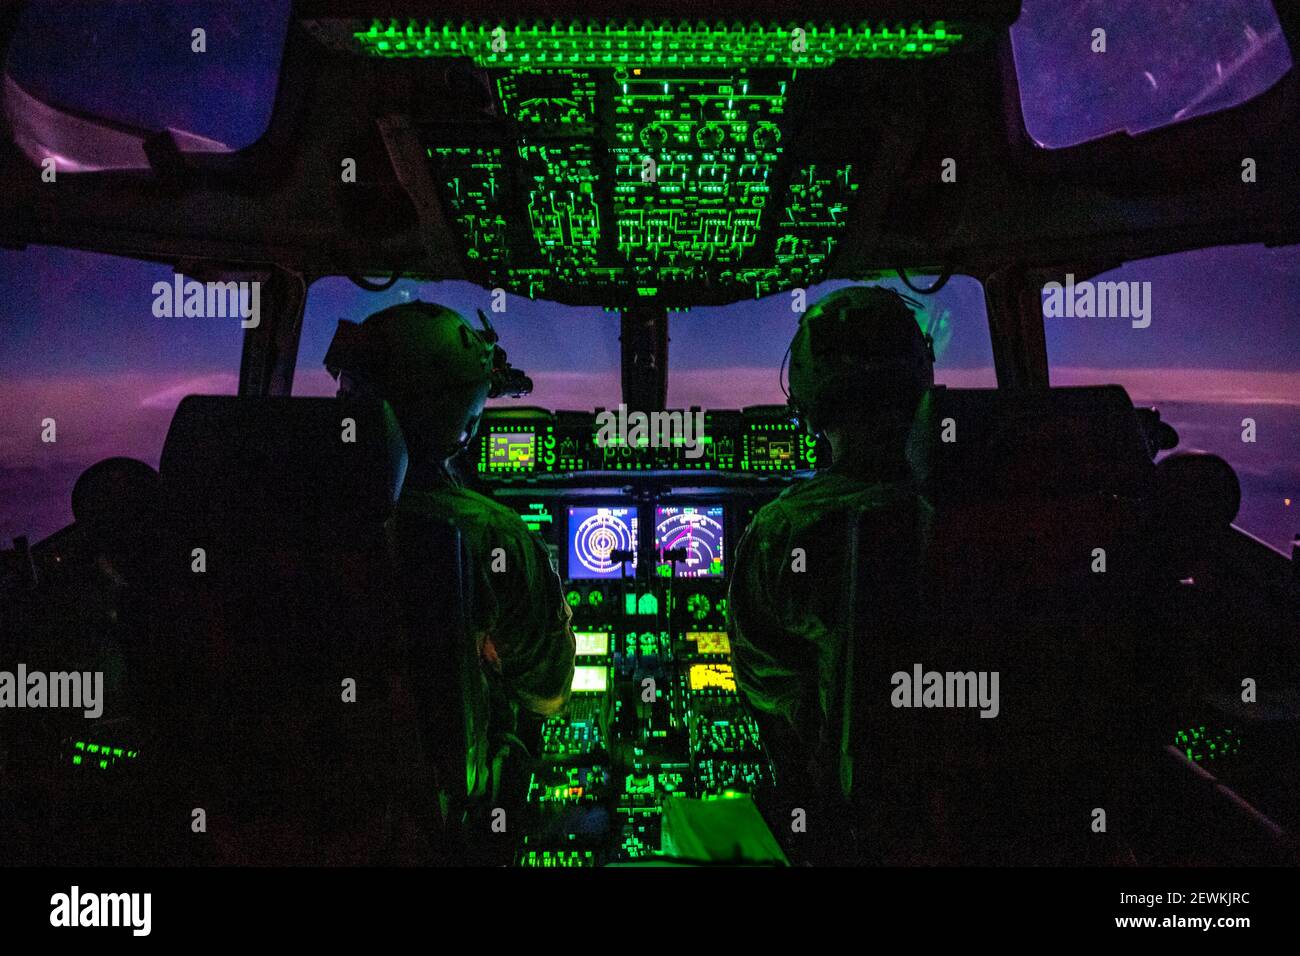 C-17 miembros de la tripulación de Globemaster III asignados al Expedicionario 816th El escuadrón del aerodeslizador realiza tareas de vuelo rutinarias durante el transporte de carga Foto de stock